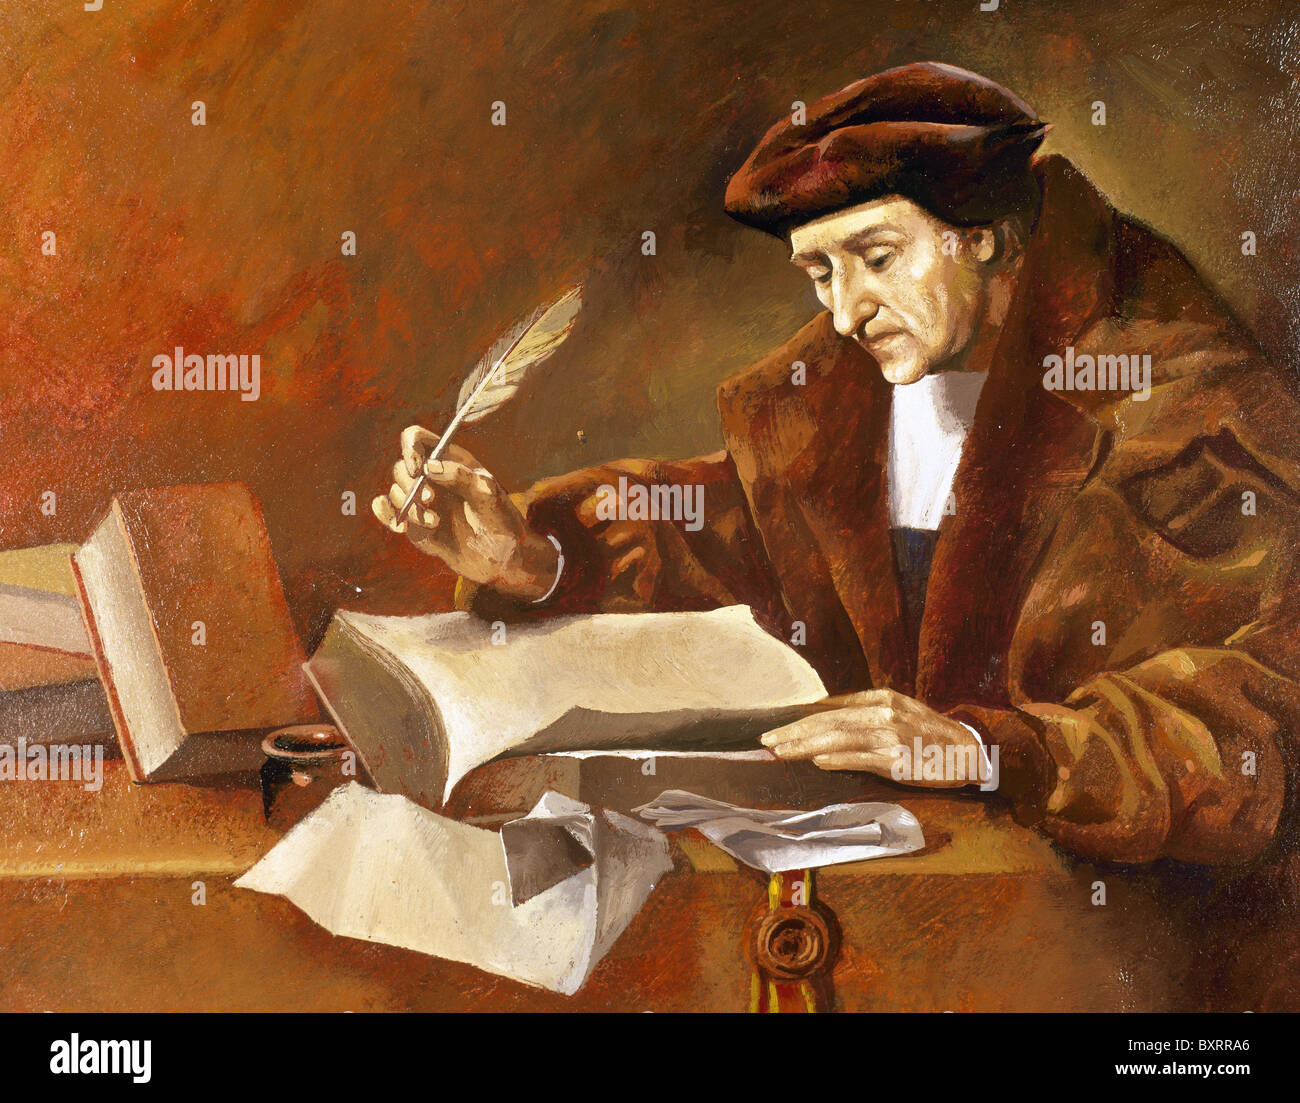 Desiderius Erasmus Roterodamus (connu sous le nom de Desiderius Erasmus de Rotterdam) (1466/1469-1536). Humaniste de la Renaissance hollandaise. Banque D'Images